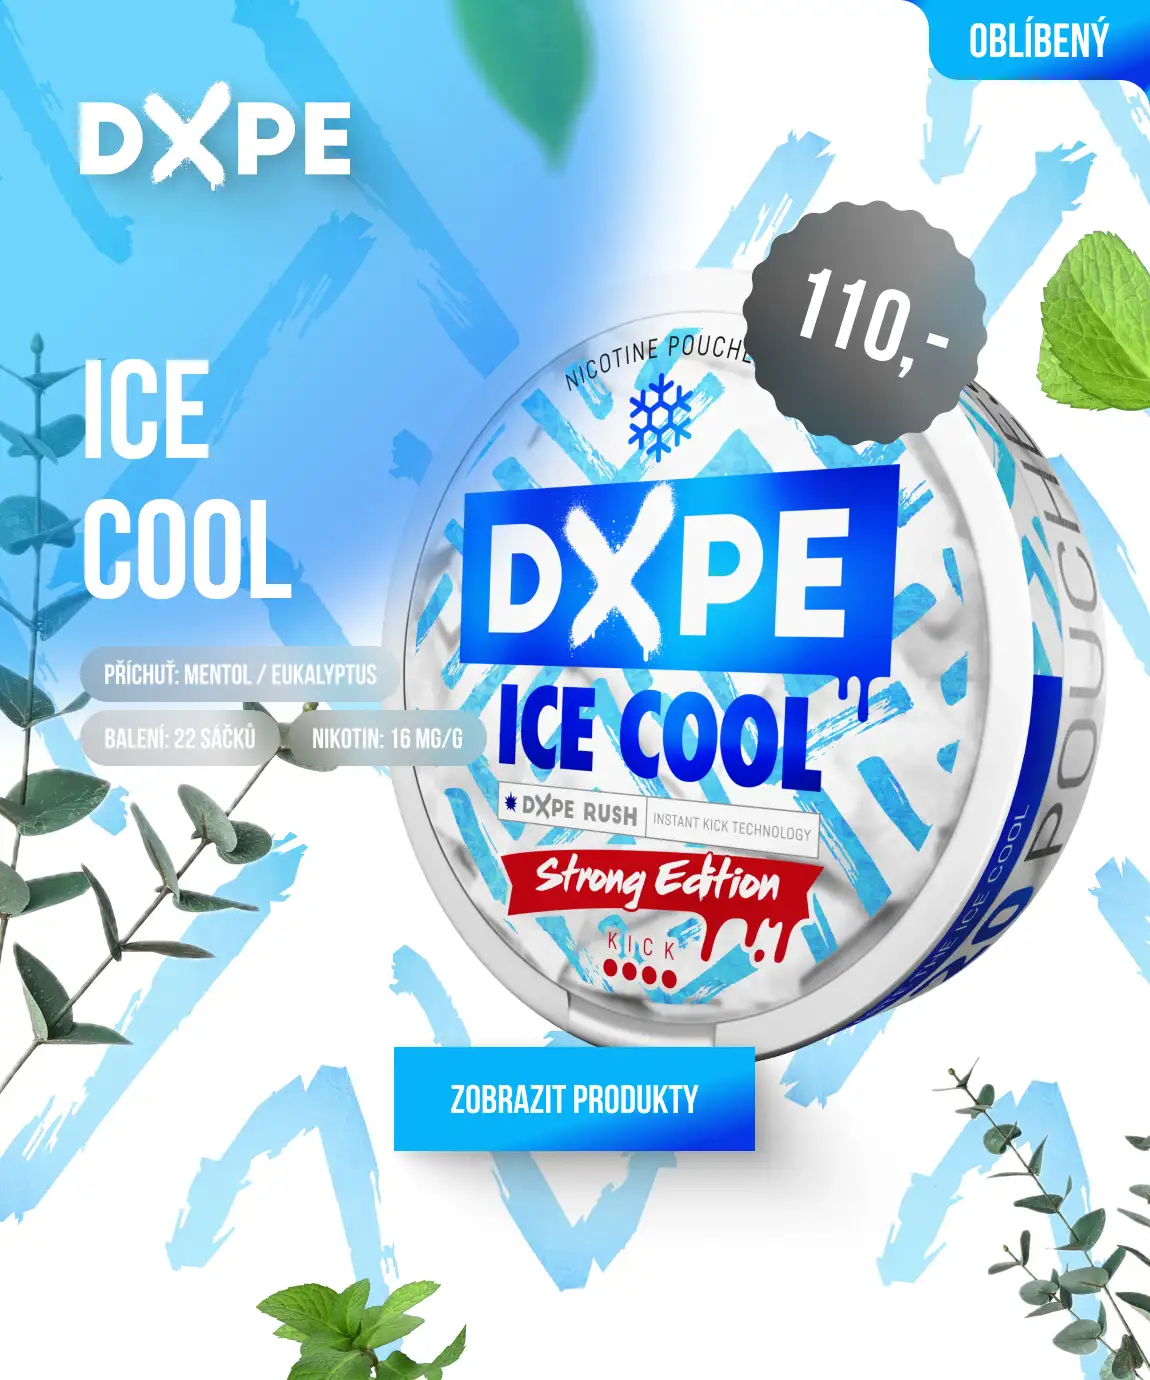 DXPE ICE COOL: Osvěžující mentol s dávkou eukalyptu